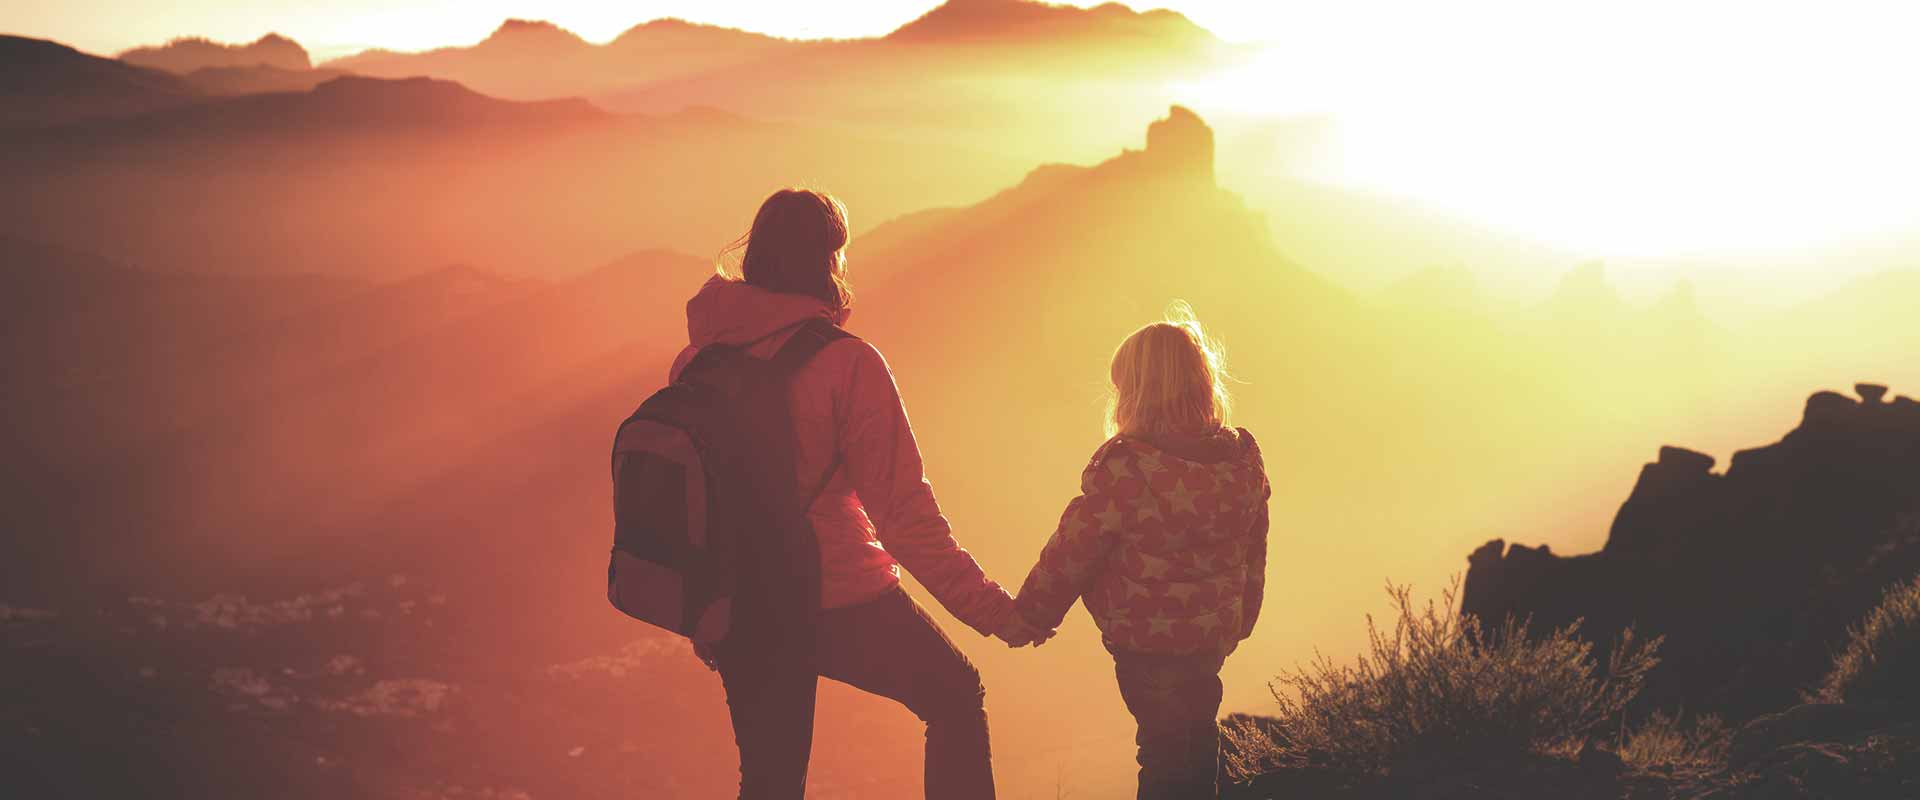 Kind und Frau stehen auf Berg und blicken in die Ferne